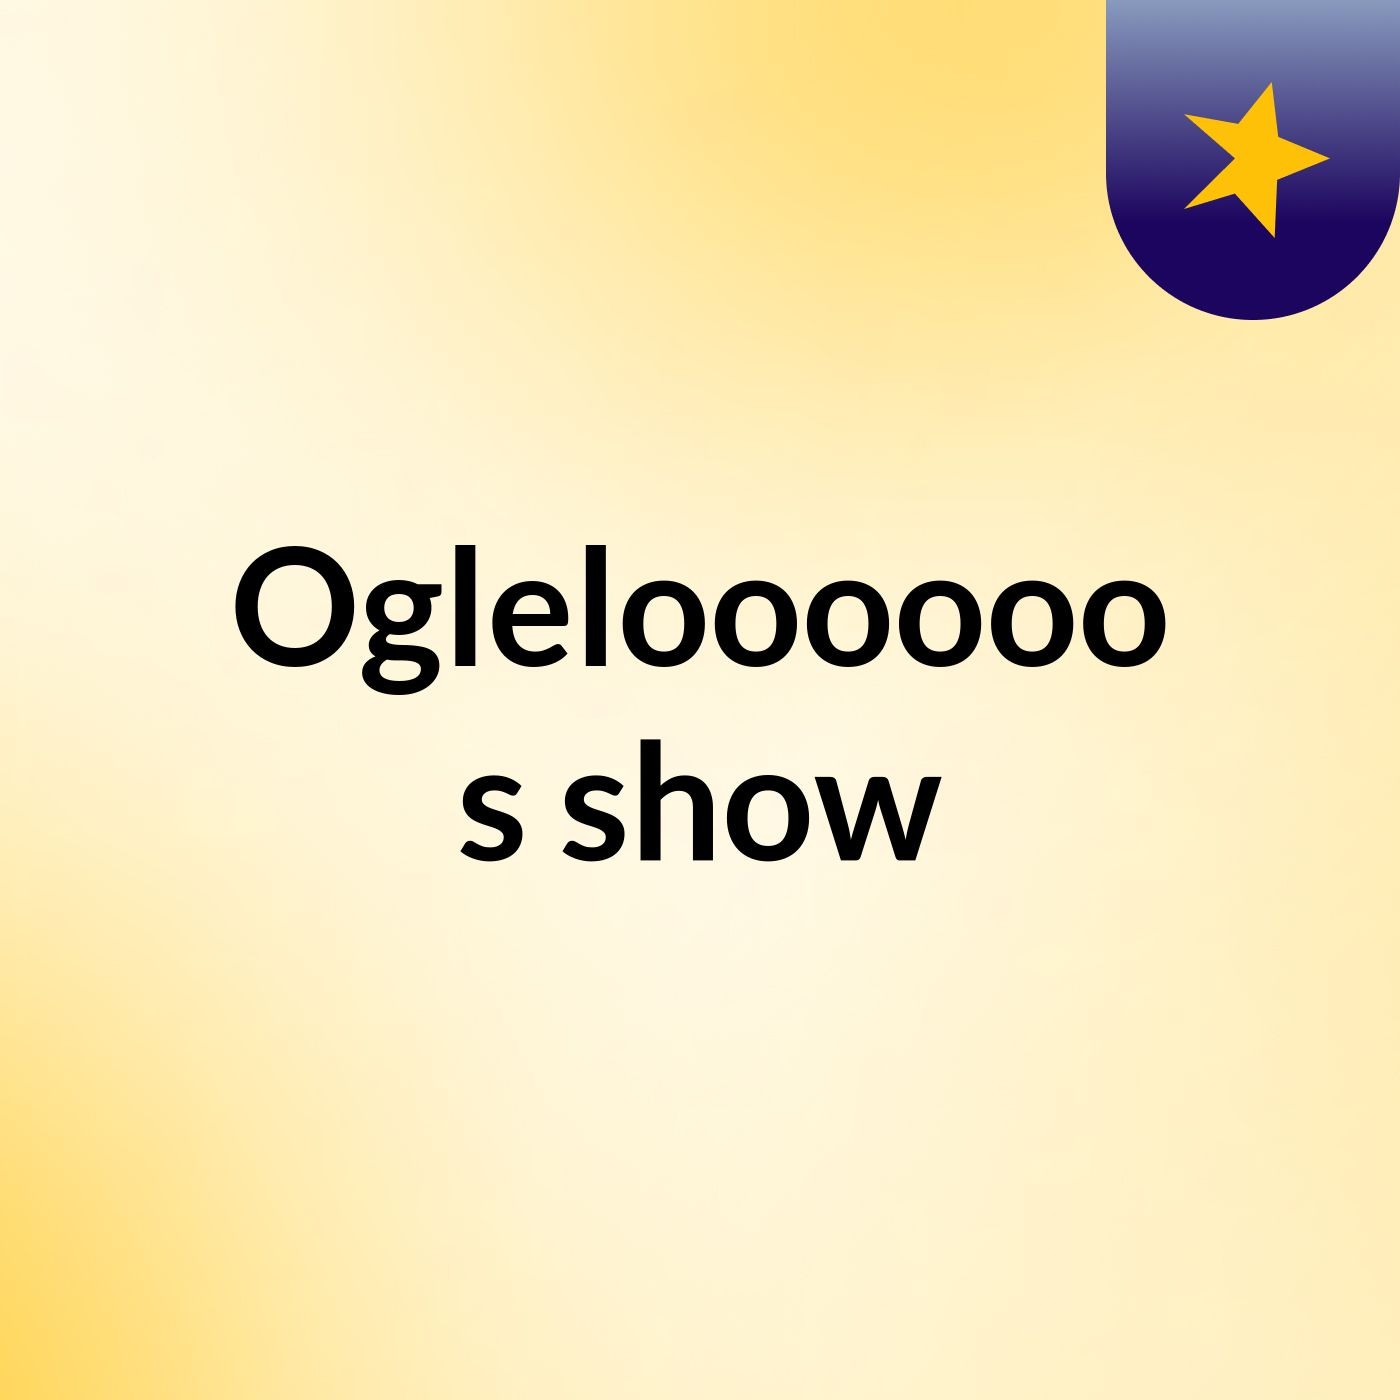 Ogleloooooo's show